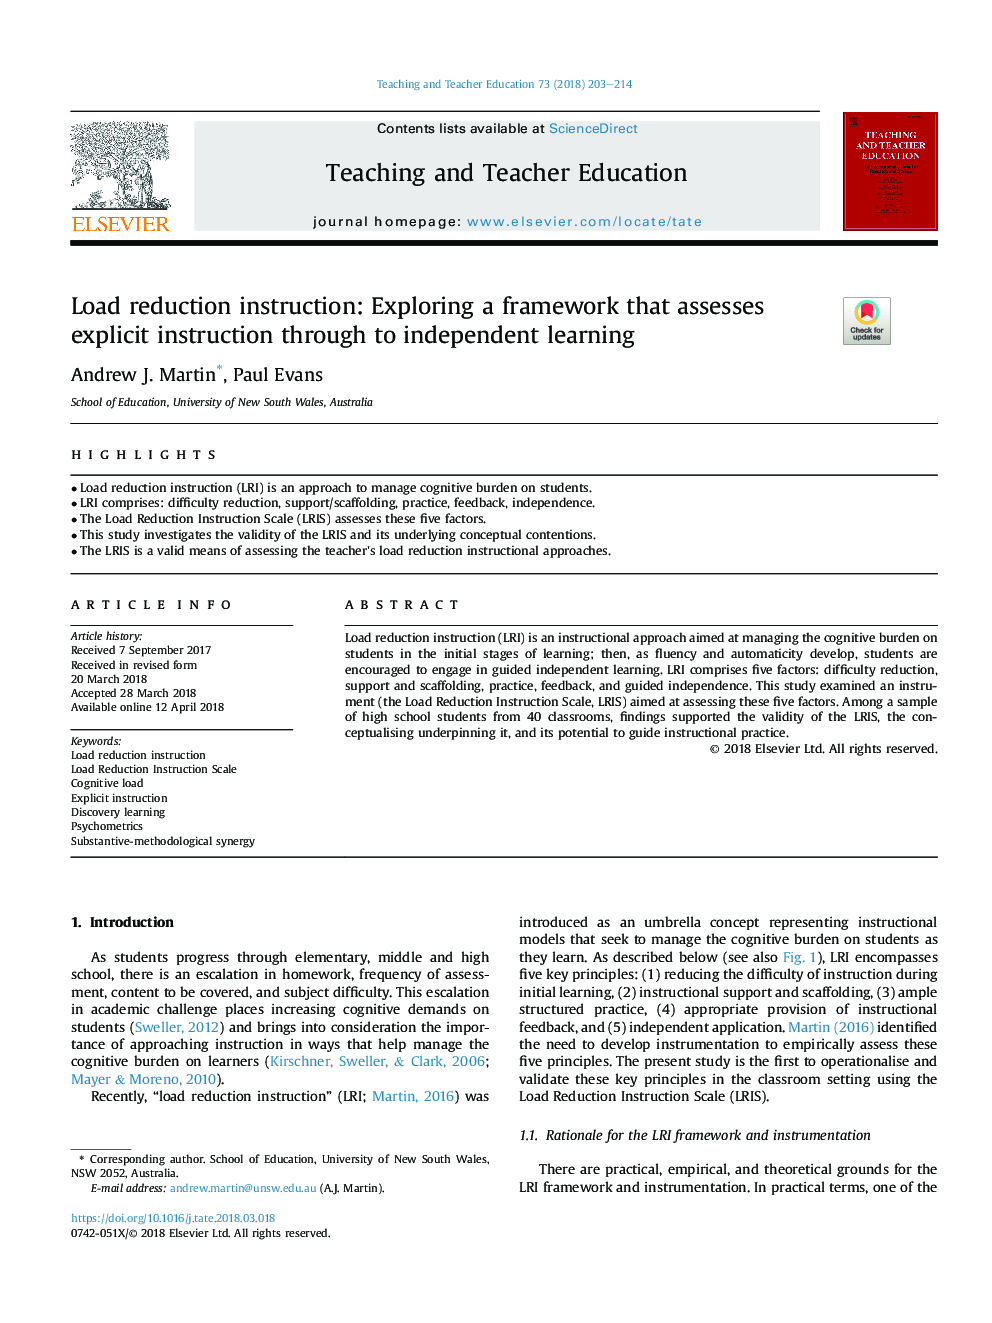 دستورالعمل کاهش بار: بررسی چارچوبی که ارزیابی آموزش صریح از طریق یادگیری مستقل است 